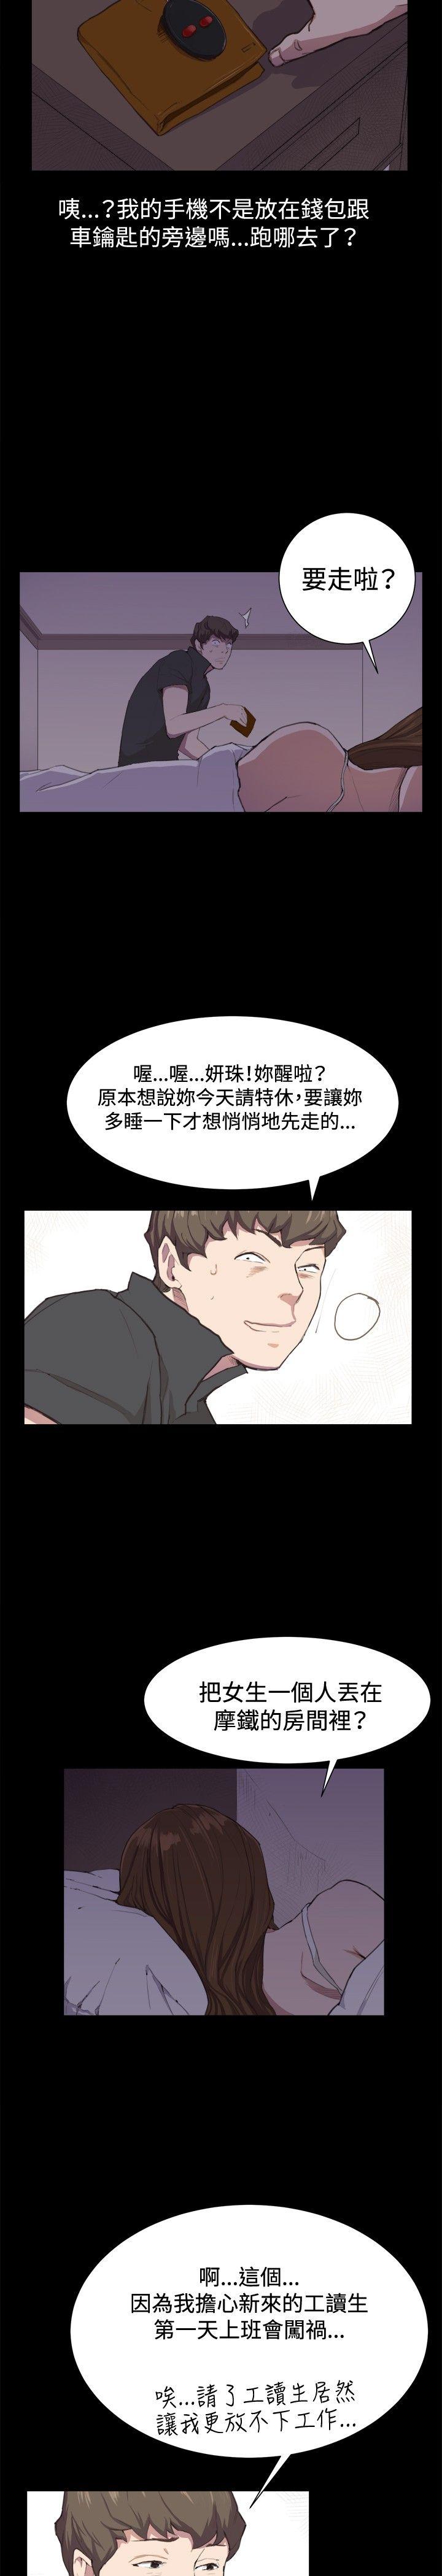 韩国污漫画 深夜便利店 第4话 2